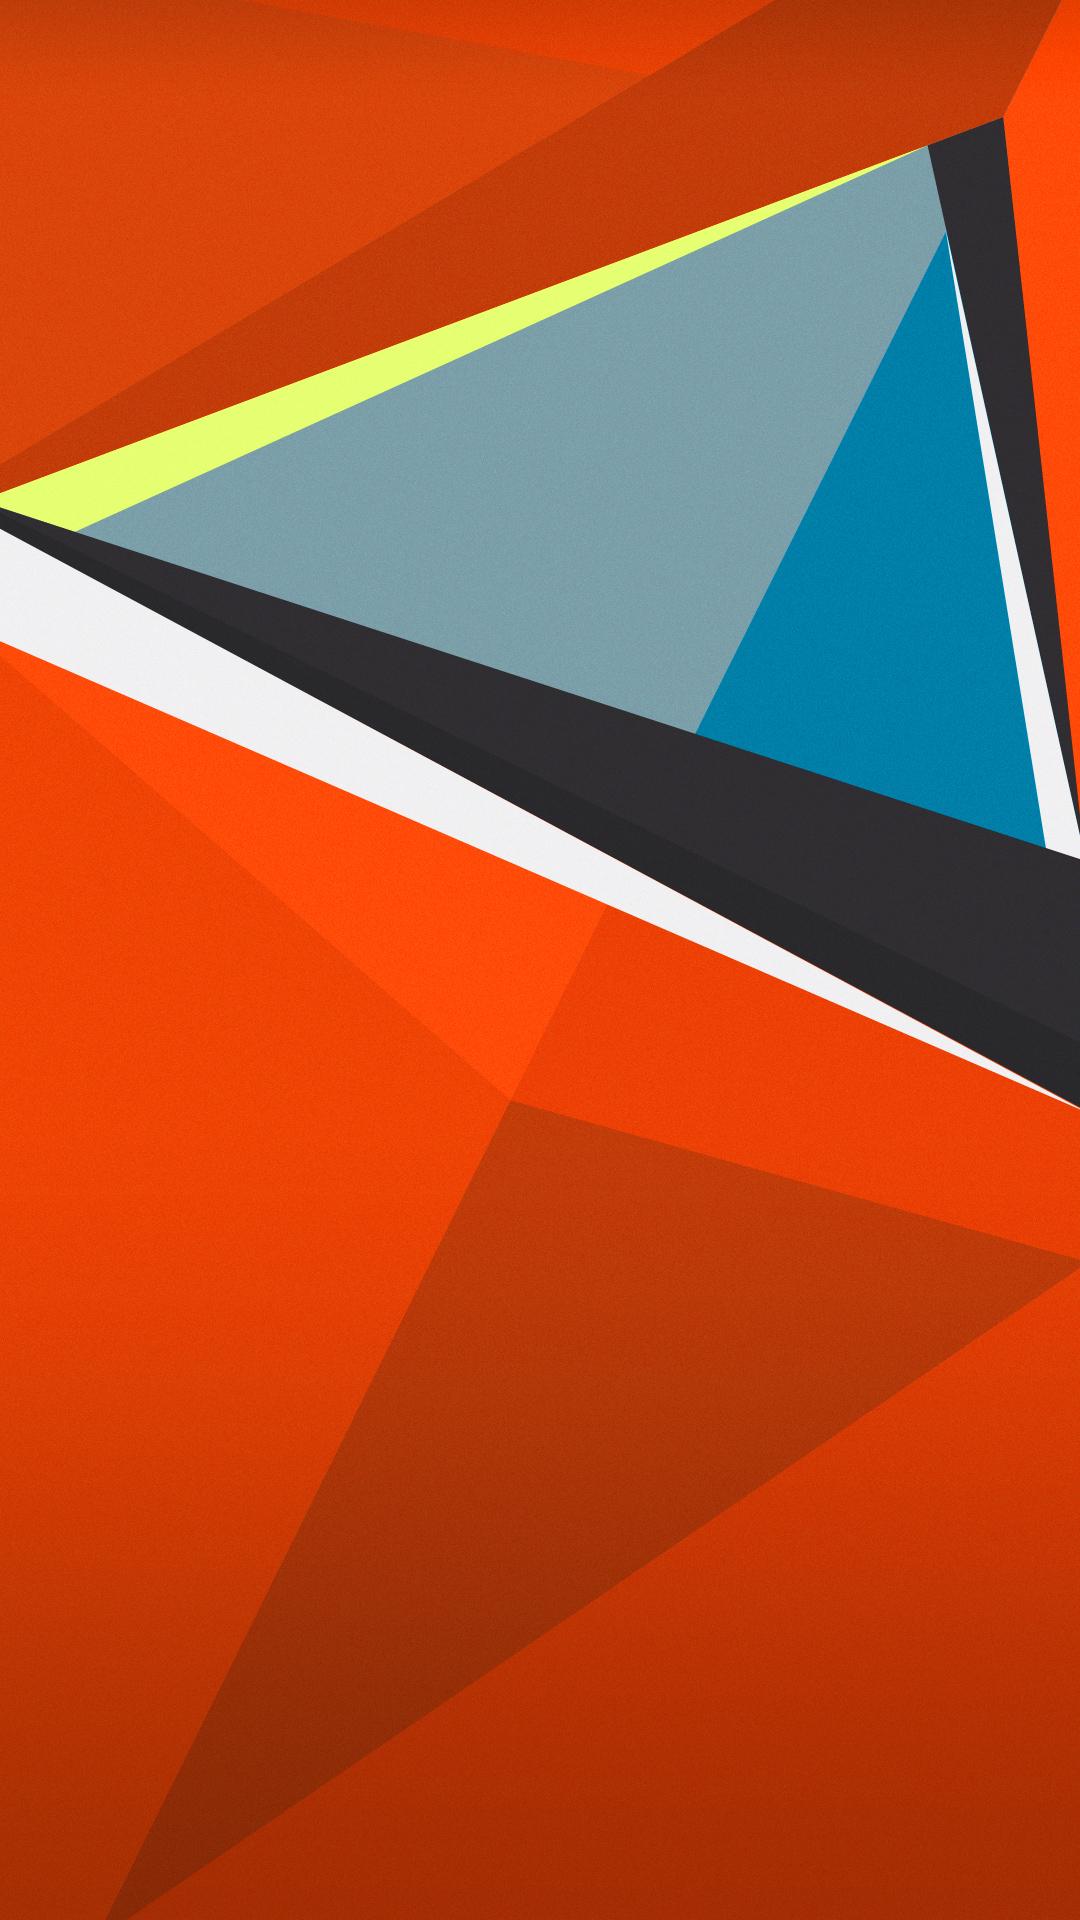 htc wallpaper,orange,line,font,triangle,graphic design